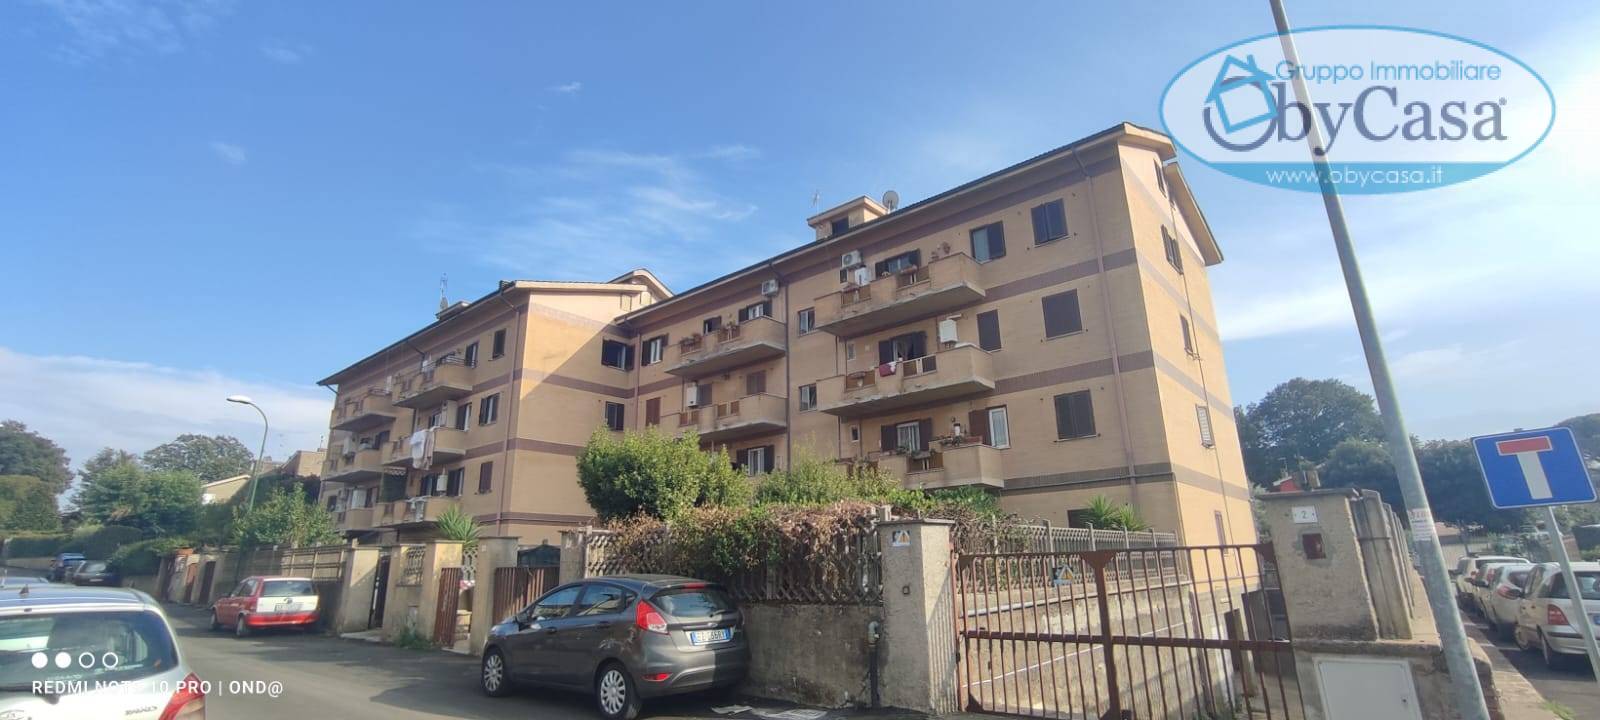 Appartamento in vendita a Manziana, 3 locali, zona Località: legrazie, prezzo € 75.000 | PortaleAgenzieImmobiliari.it